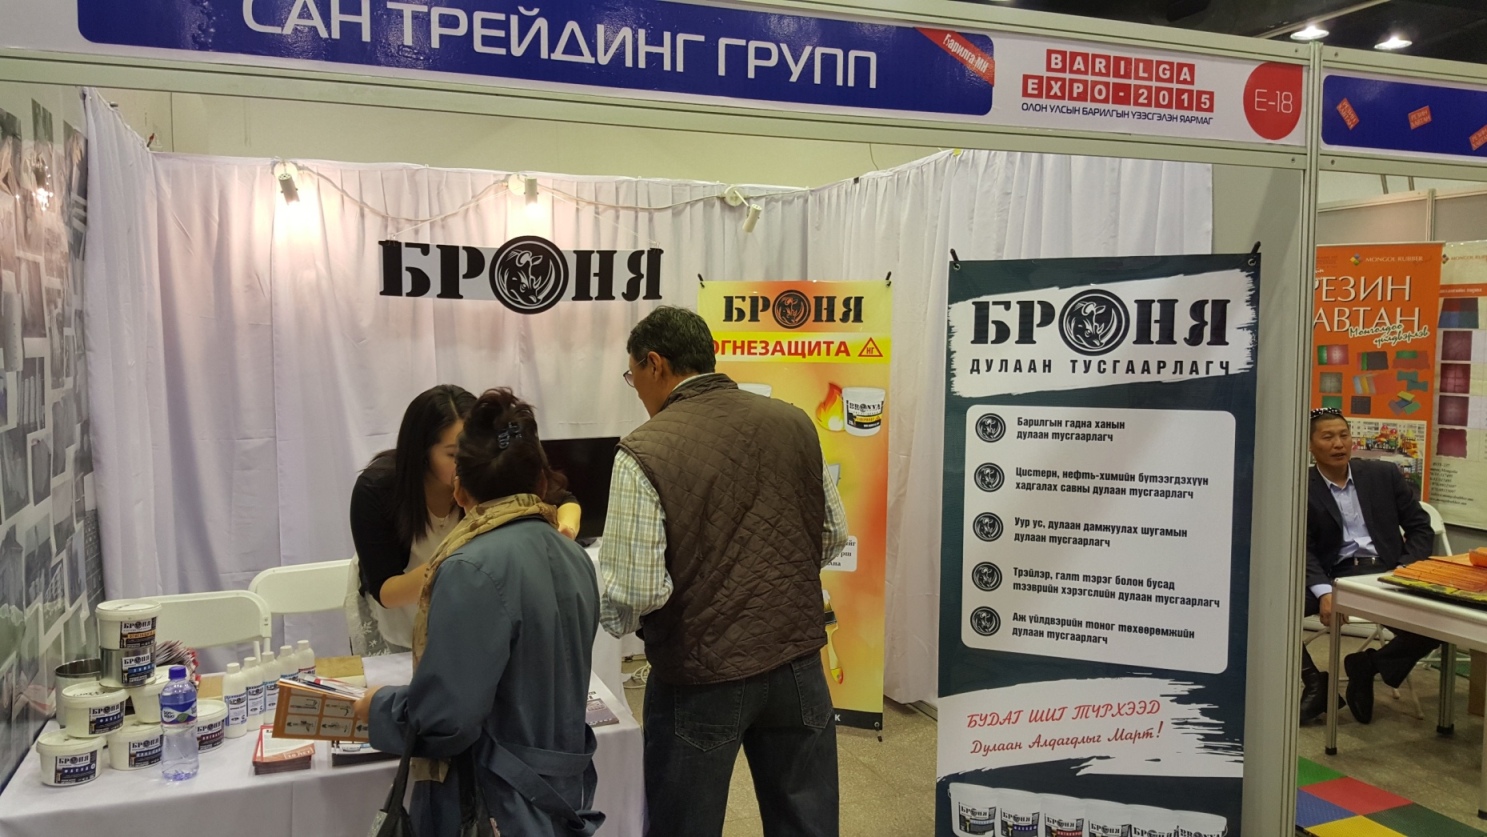 Теплоизоляция Броня на выставке в Монголии